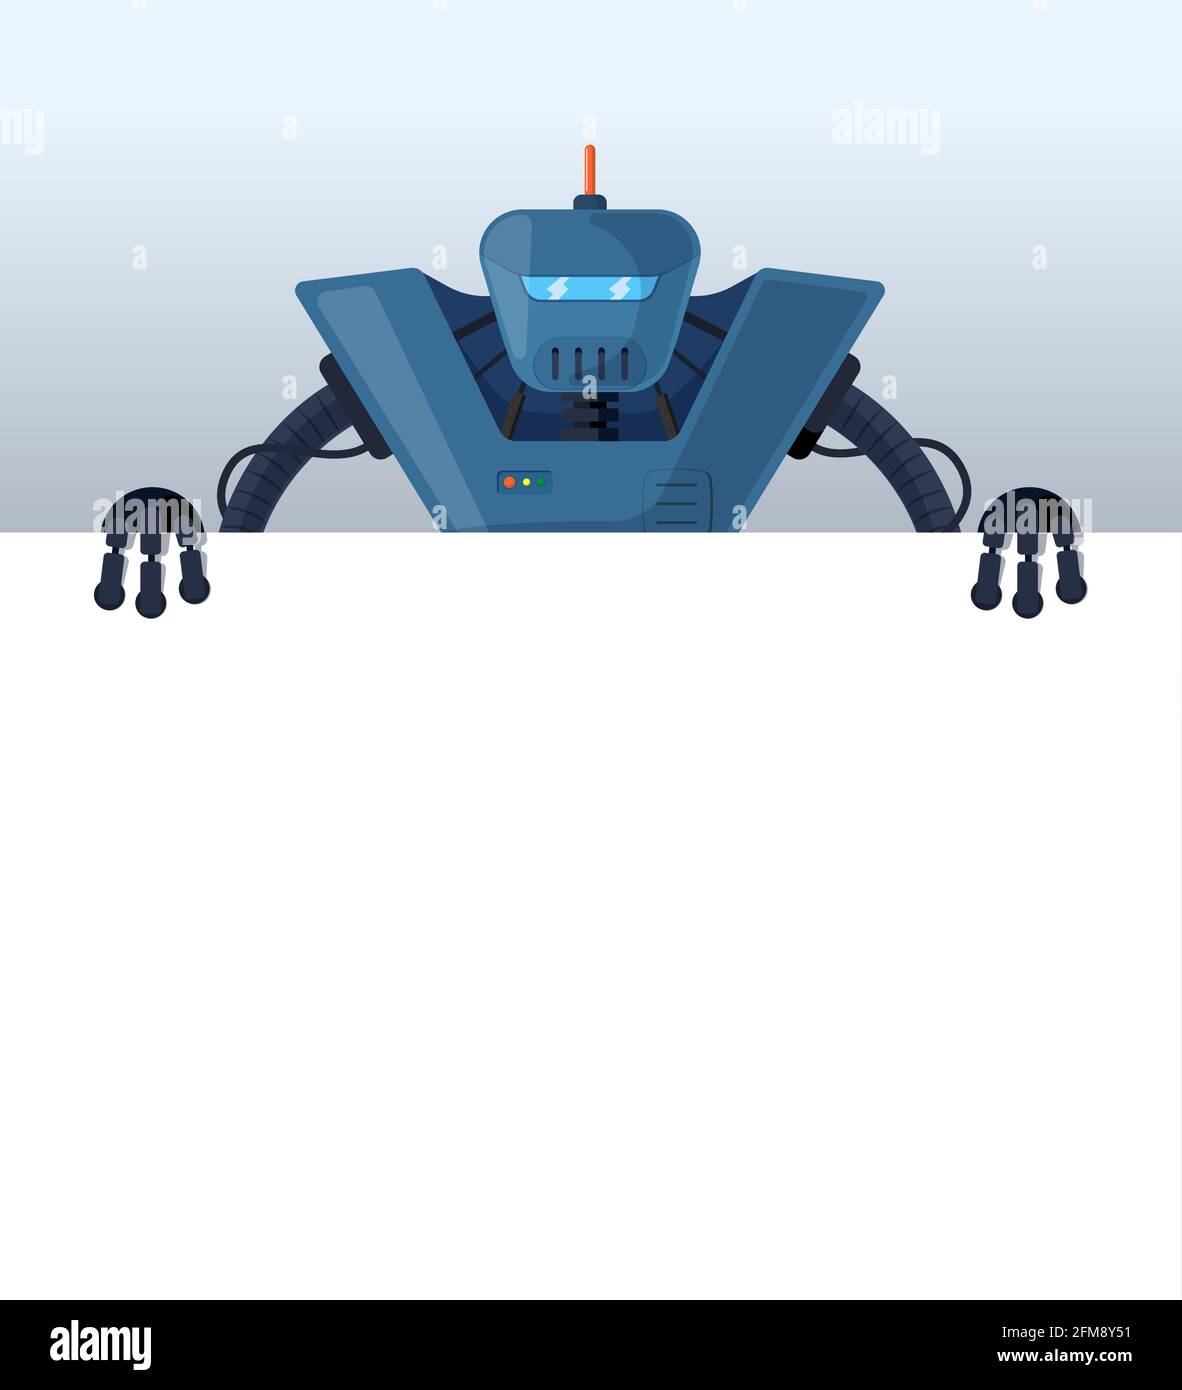 Cartoon-Roboter stehen hinter leeren Poster Platz für Text. Blauer  Retro-Cyborg-Charakter mit leerem weißen Brett zur Präsentation. Roboter  Informationen Banner mockup Interface Design Vektor Illustration  Stock-Vektorgrafik - Alamy